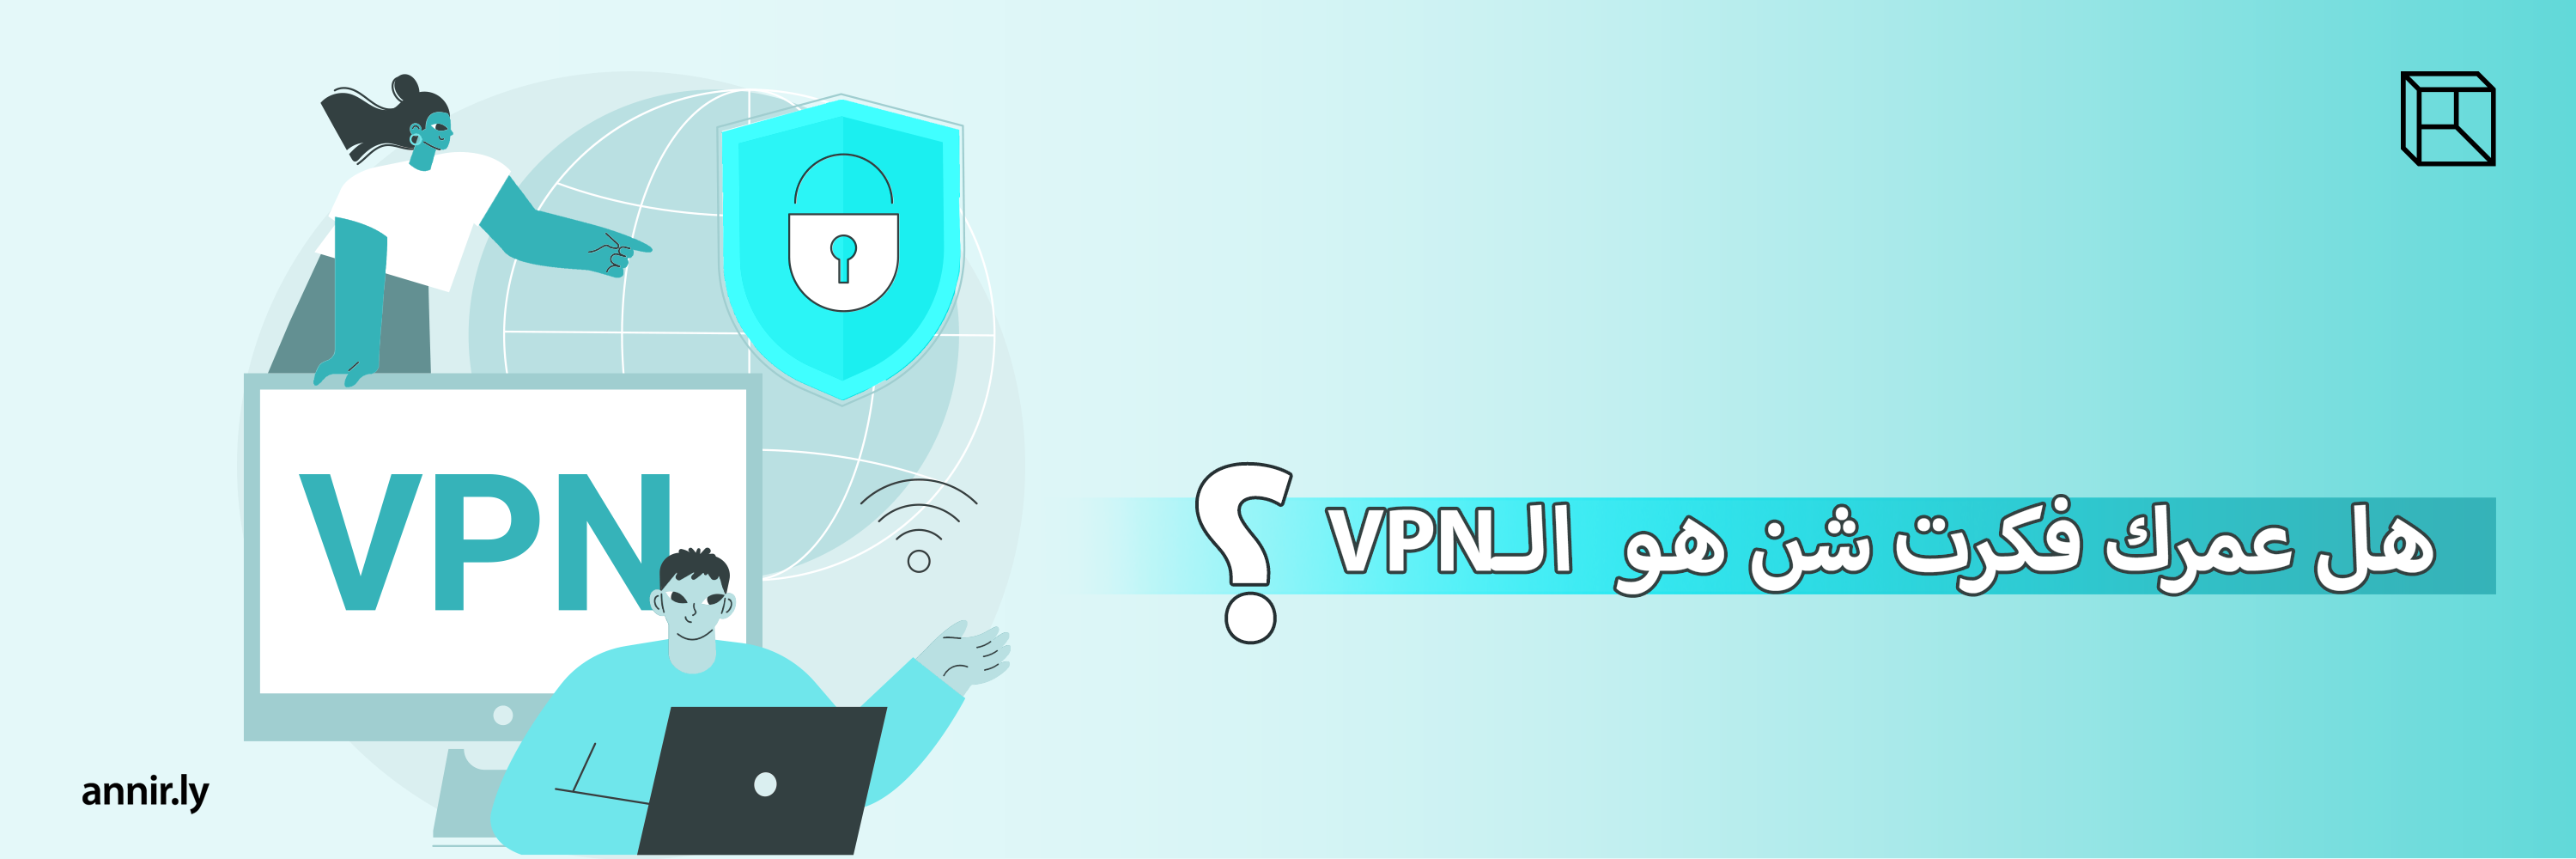 VPN: مقدمة قصيرة جداً